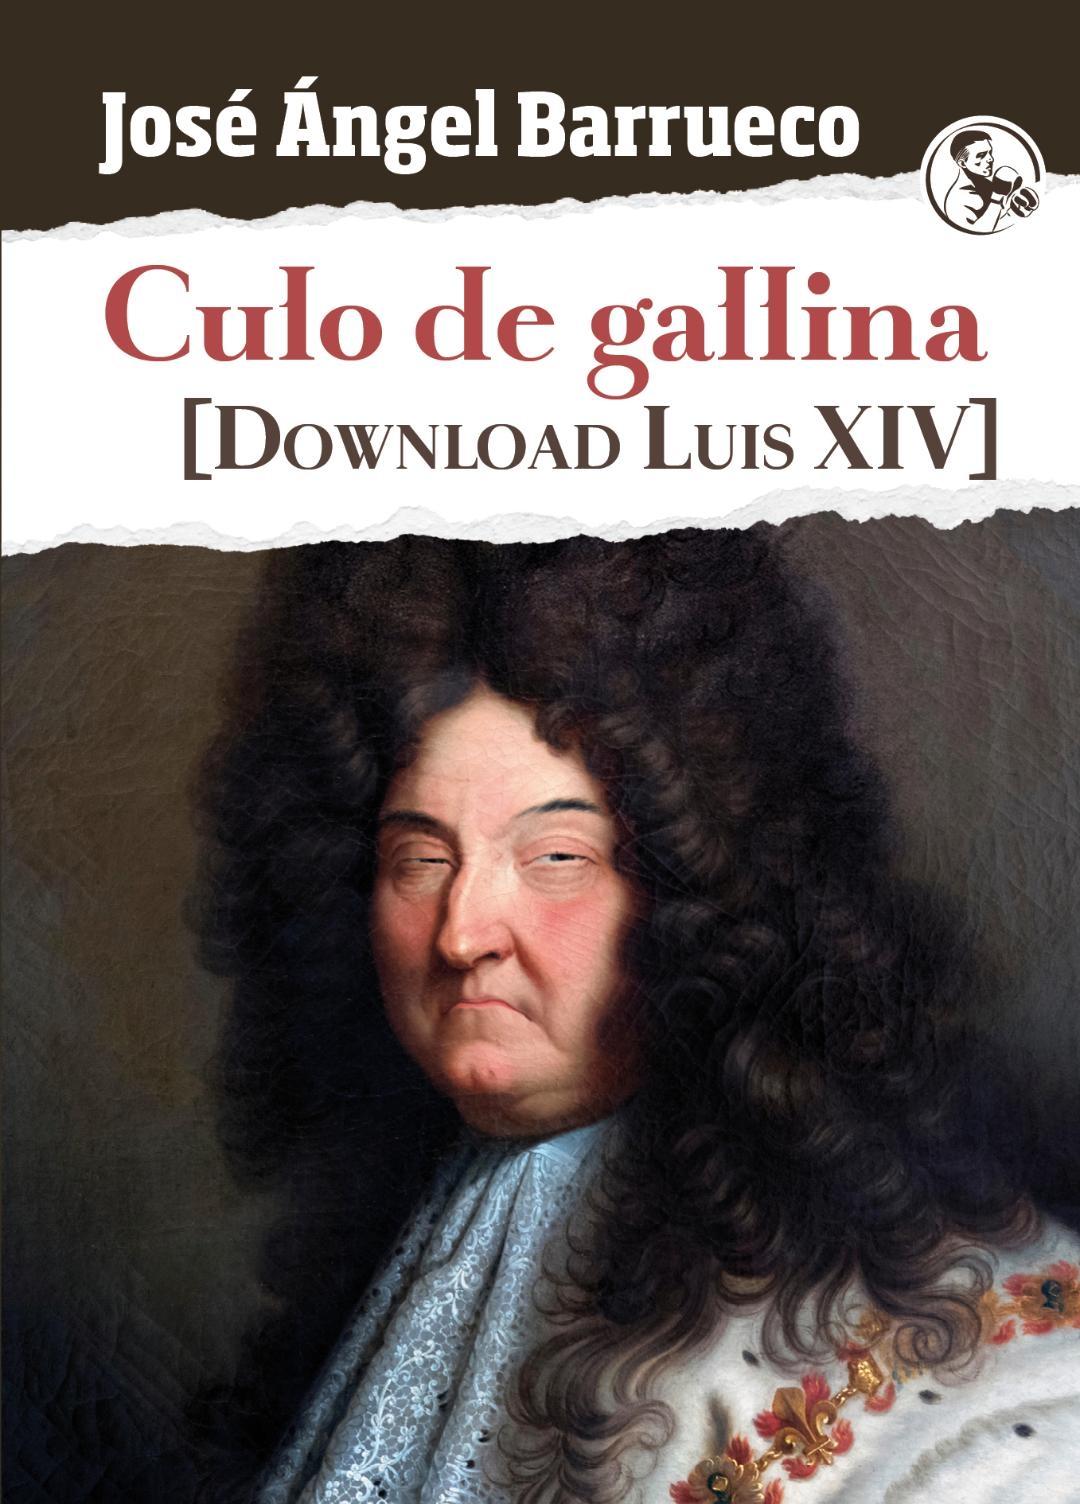 Culo de gallina "Download Luis XIV". 